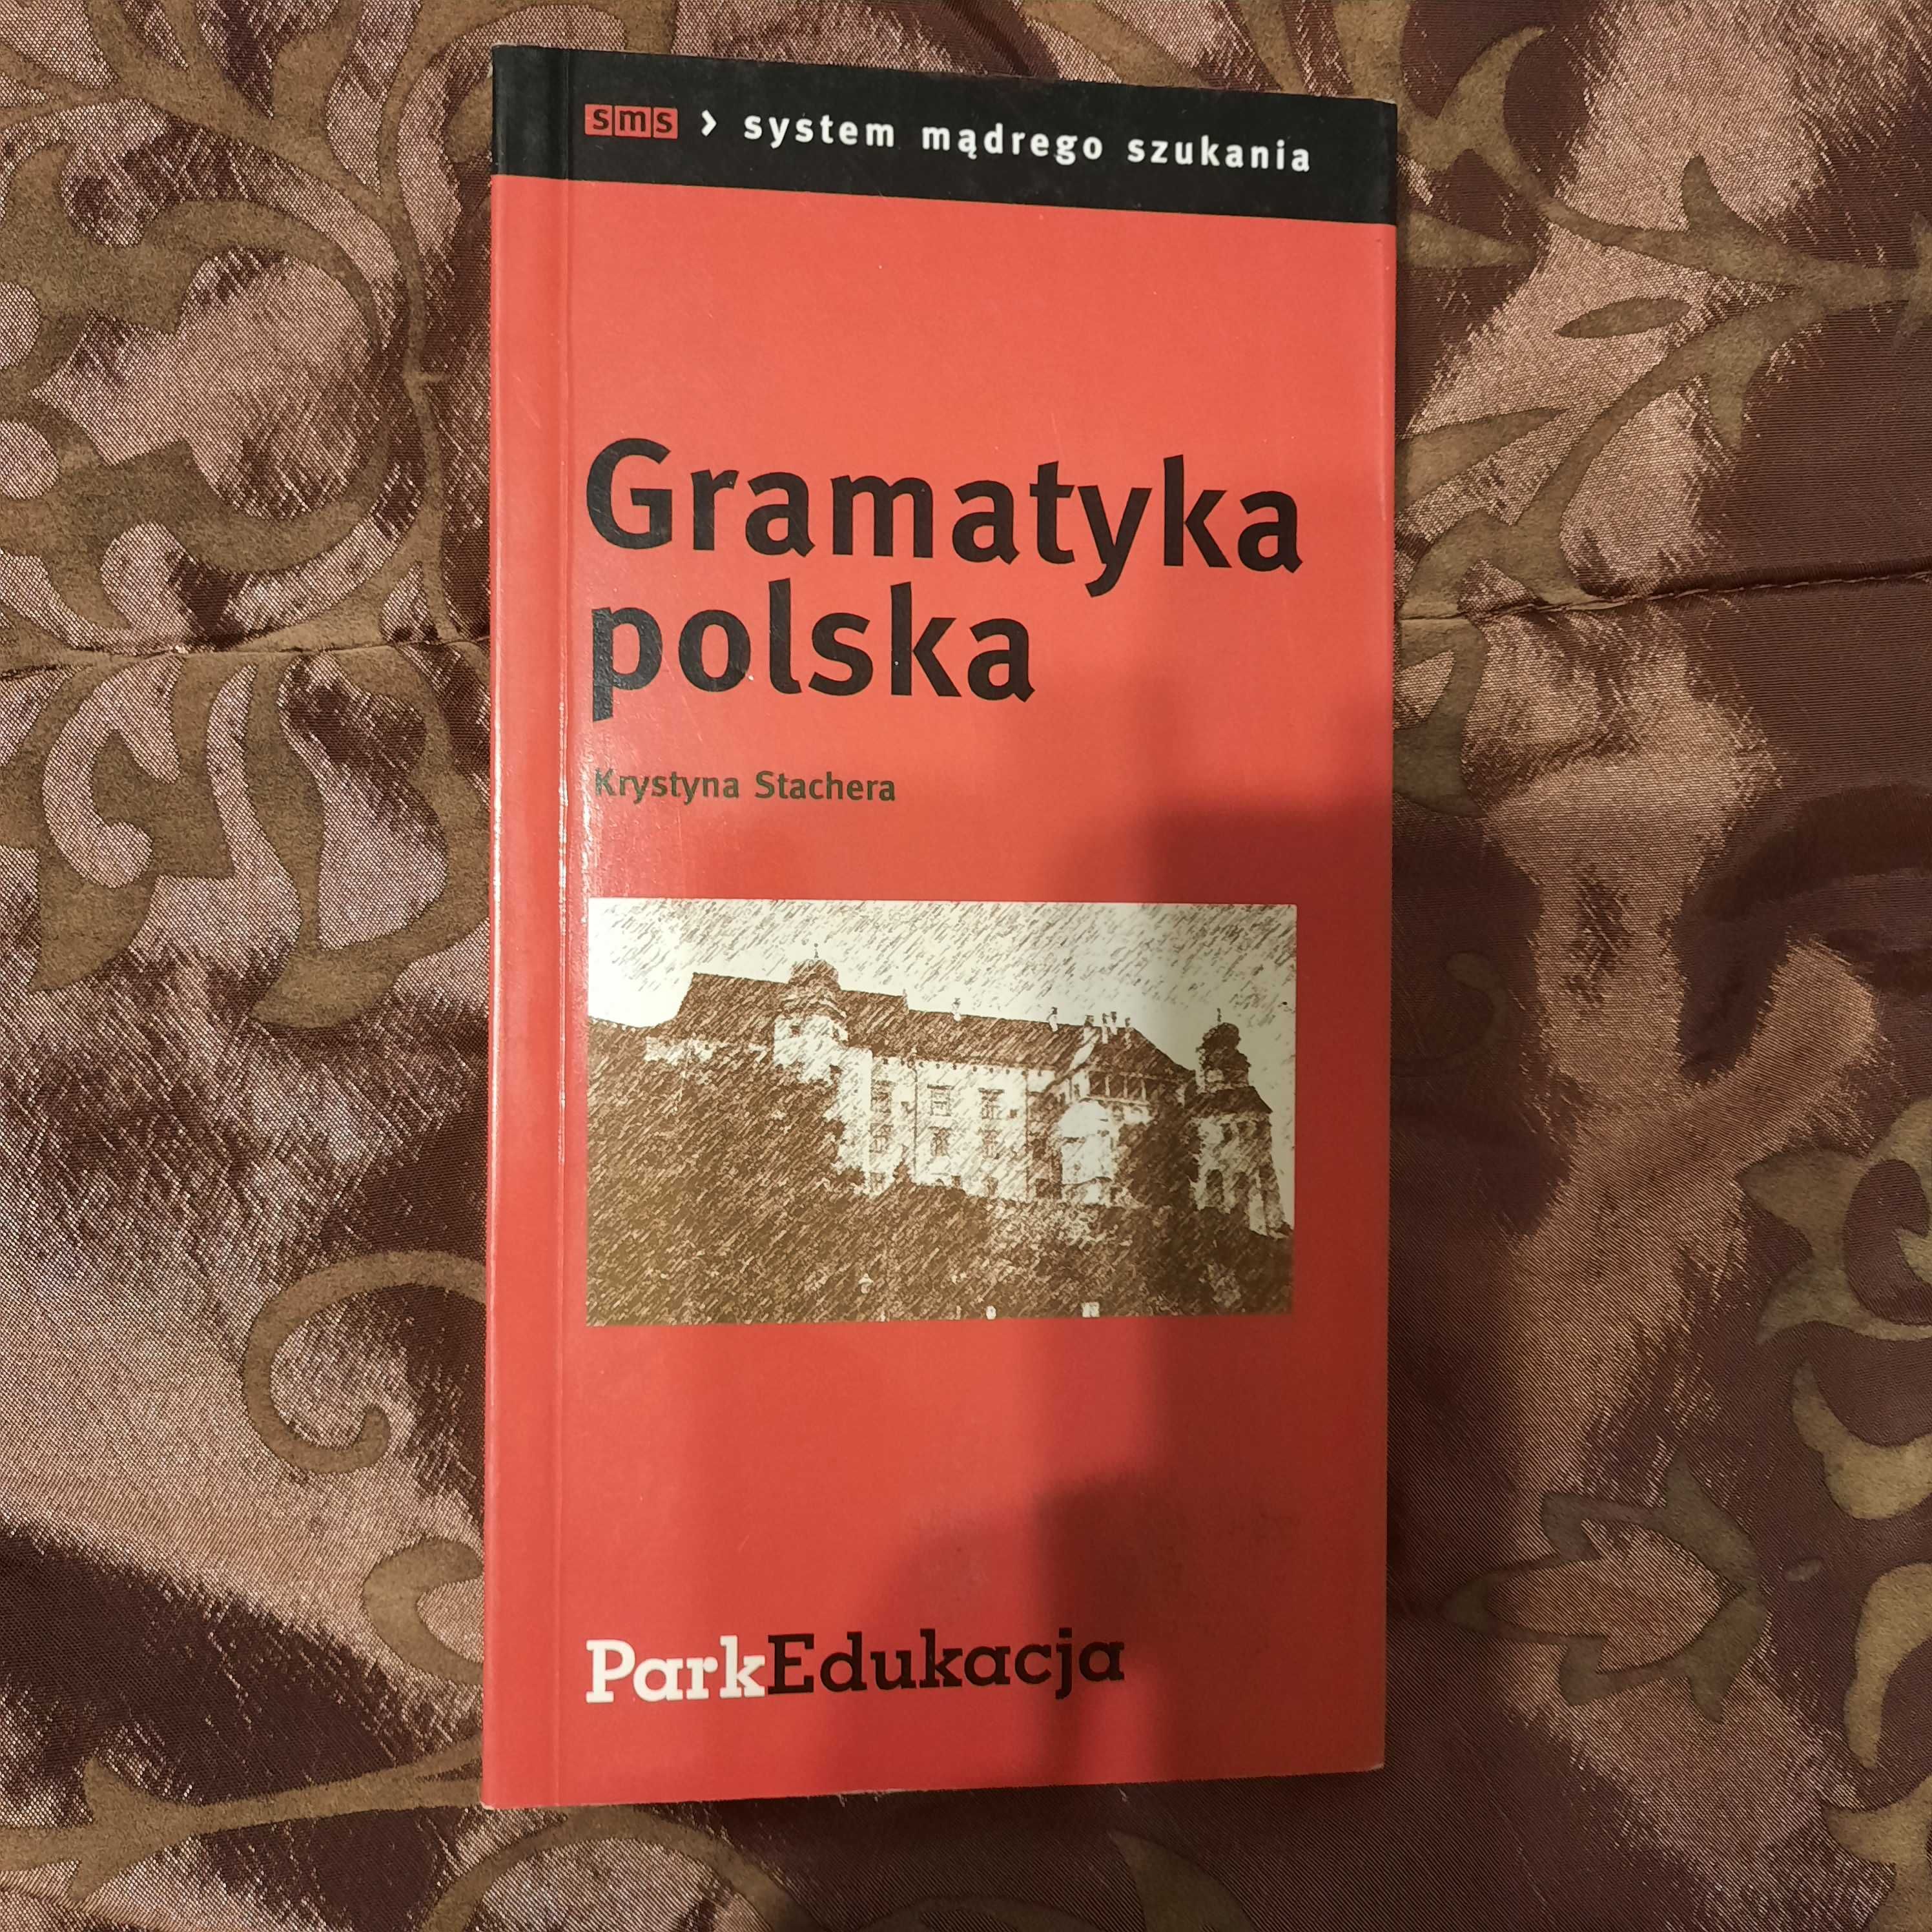 Gramatyka polska - system mądrego szukania